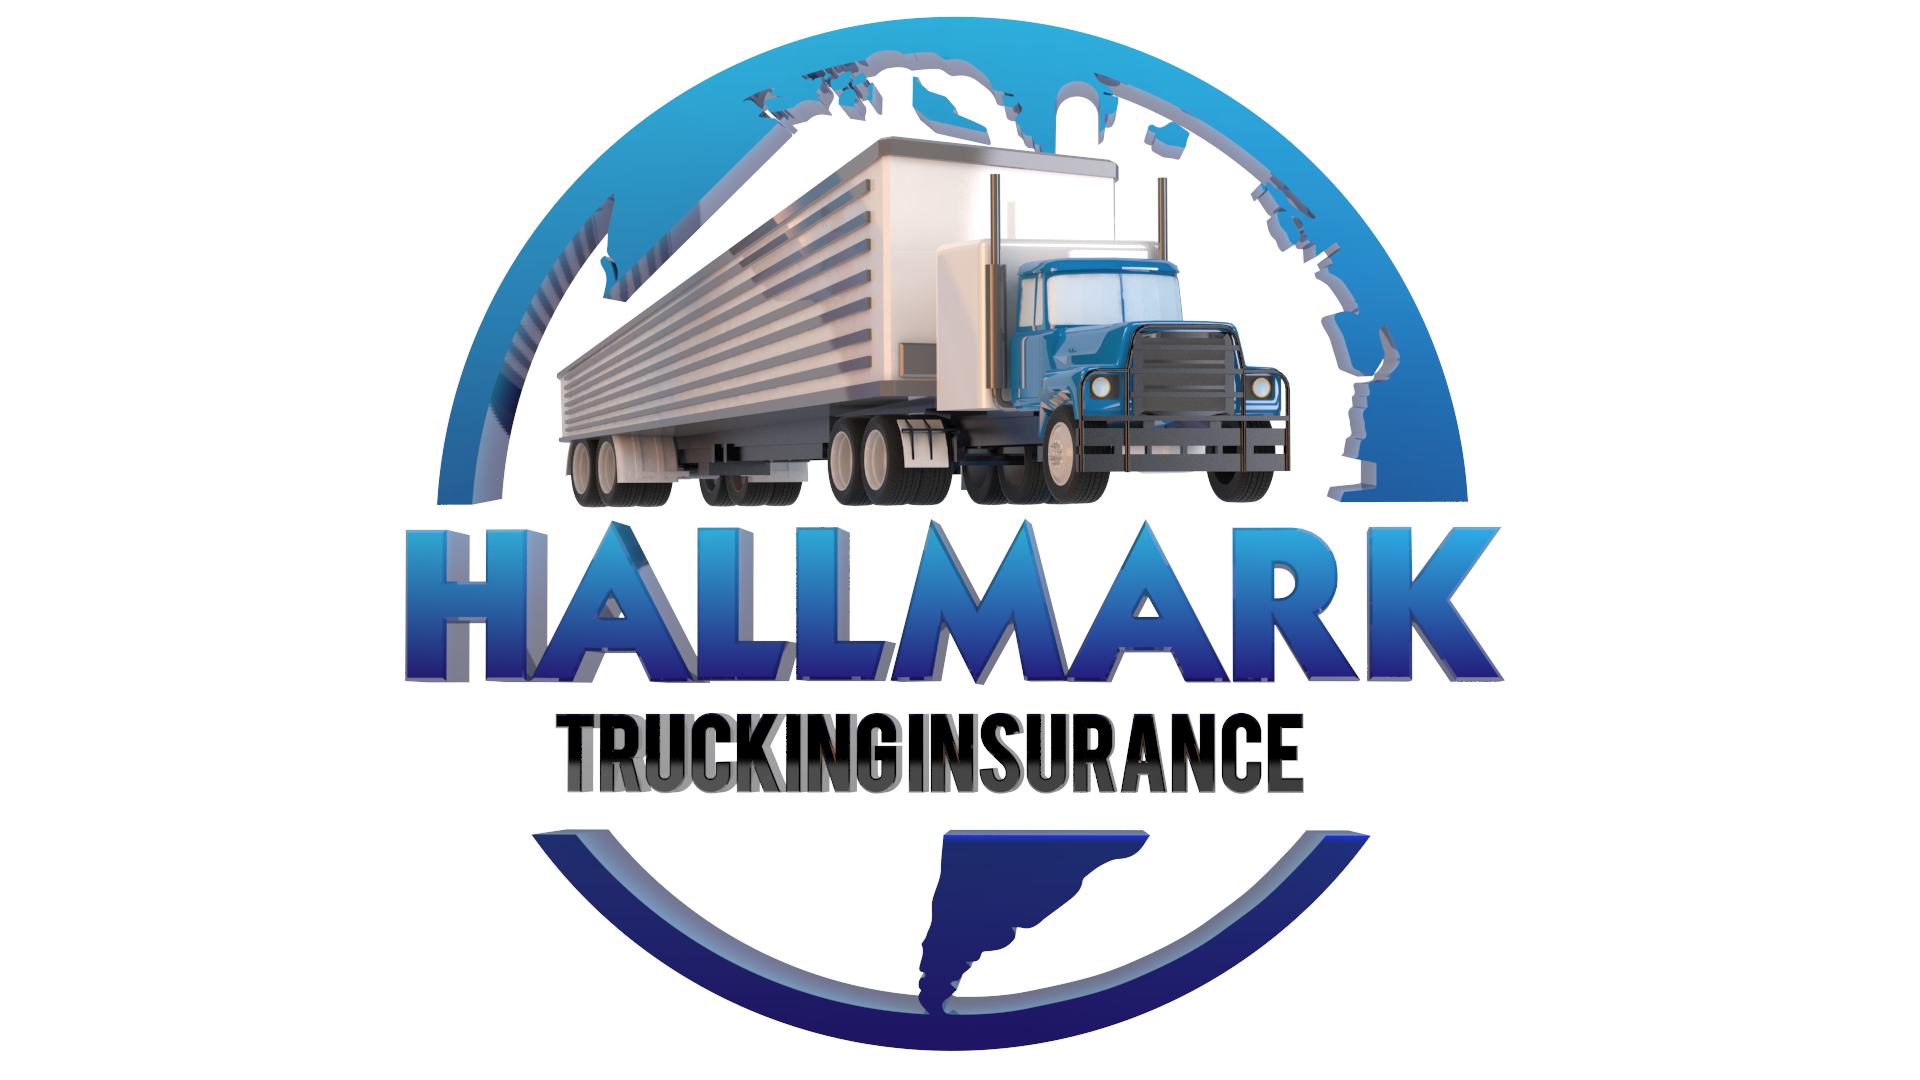 Hallmark Trucking Insurance